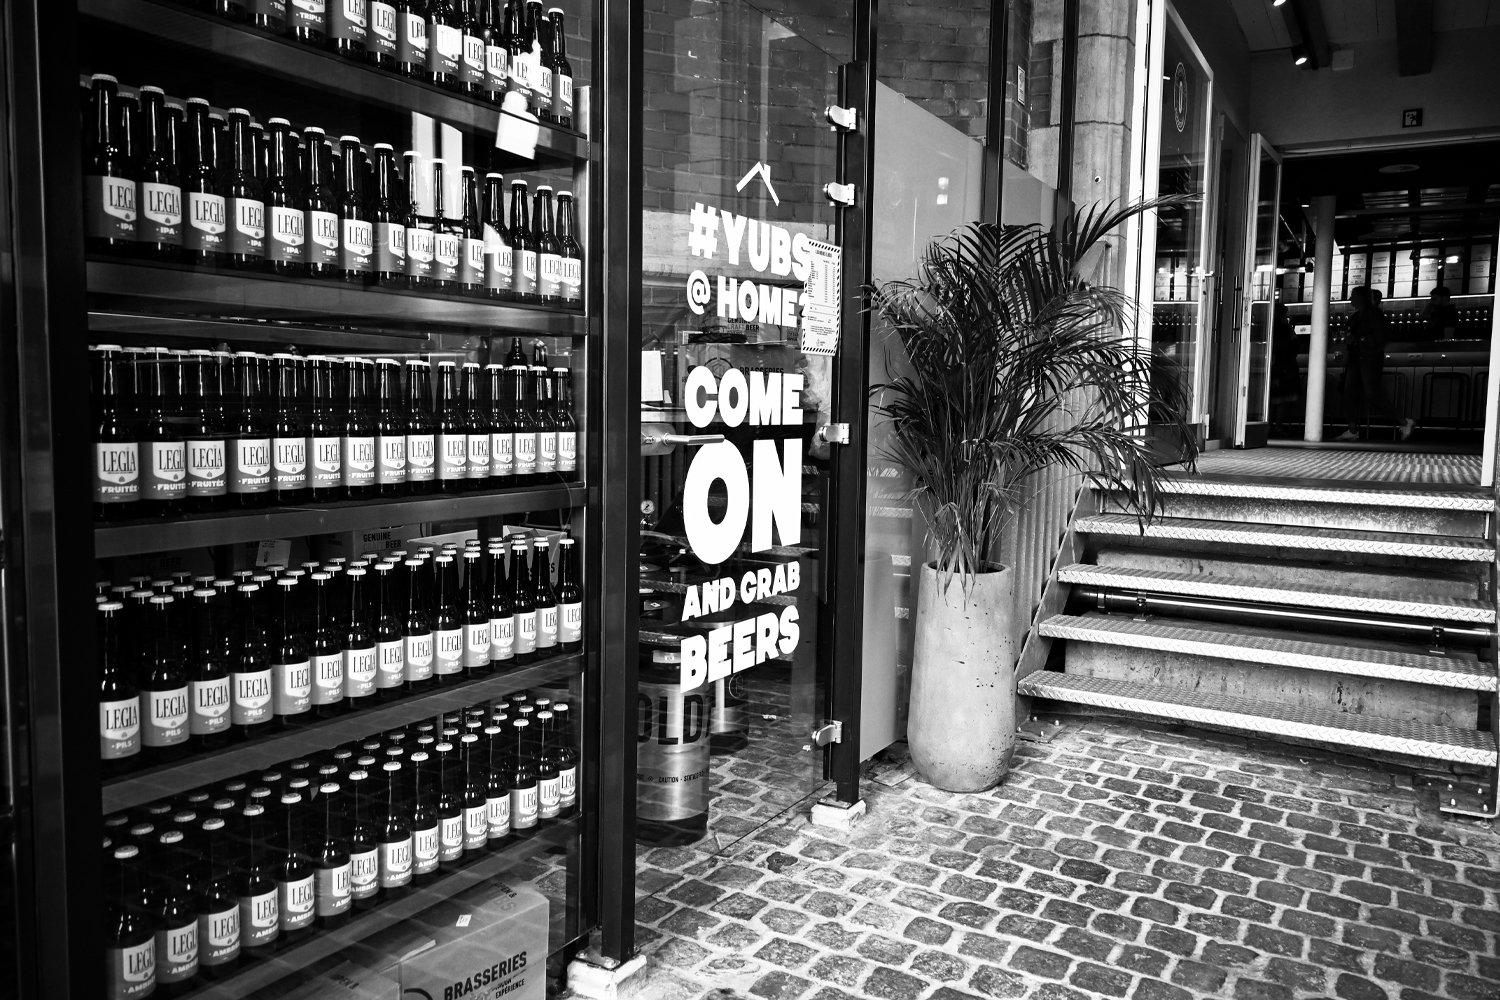 Le Shop / LEGIA / Brasseries de Liège / BDL / YUBS / Bières / Beers